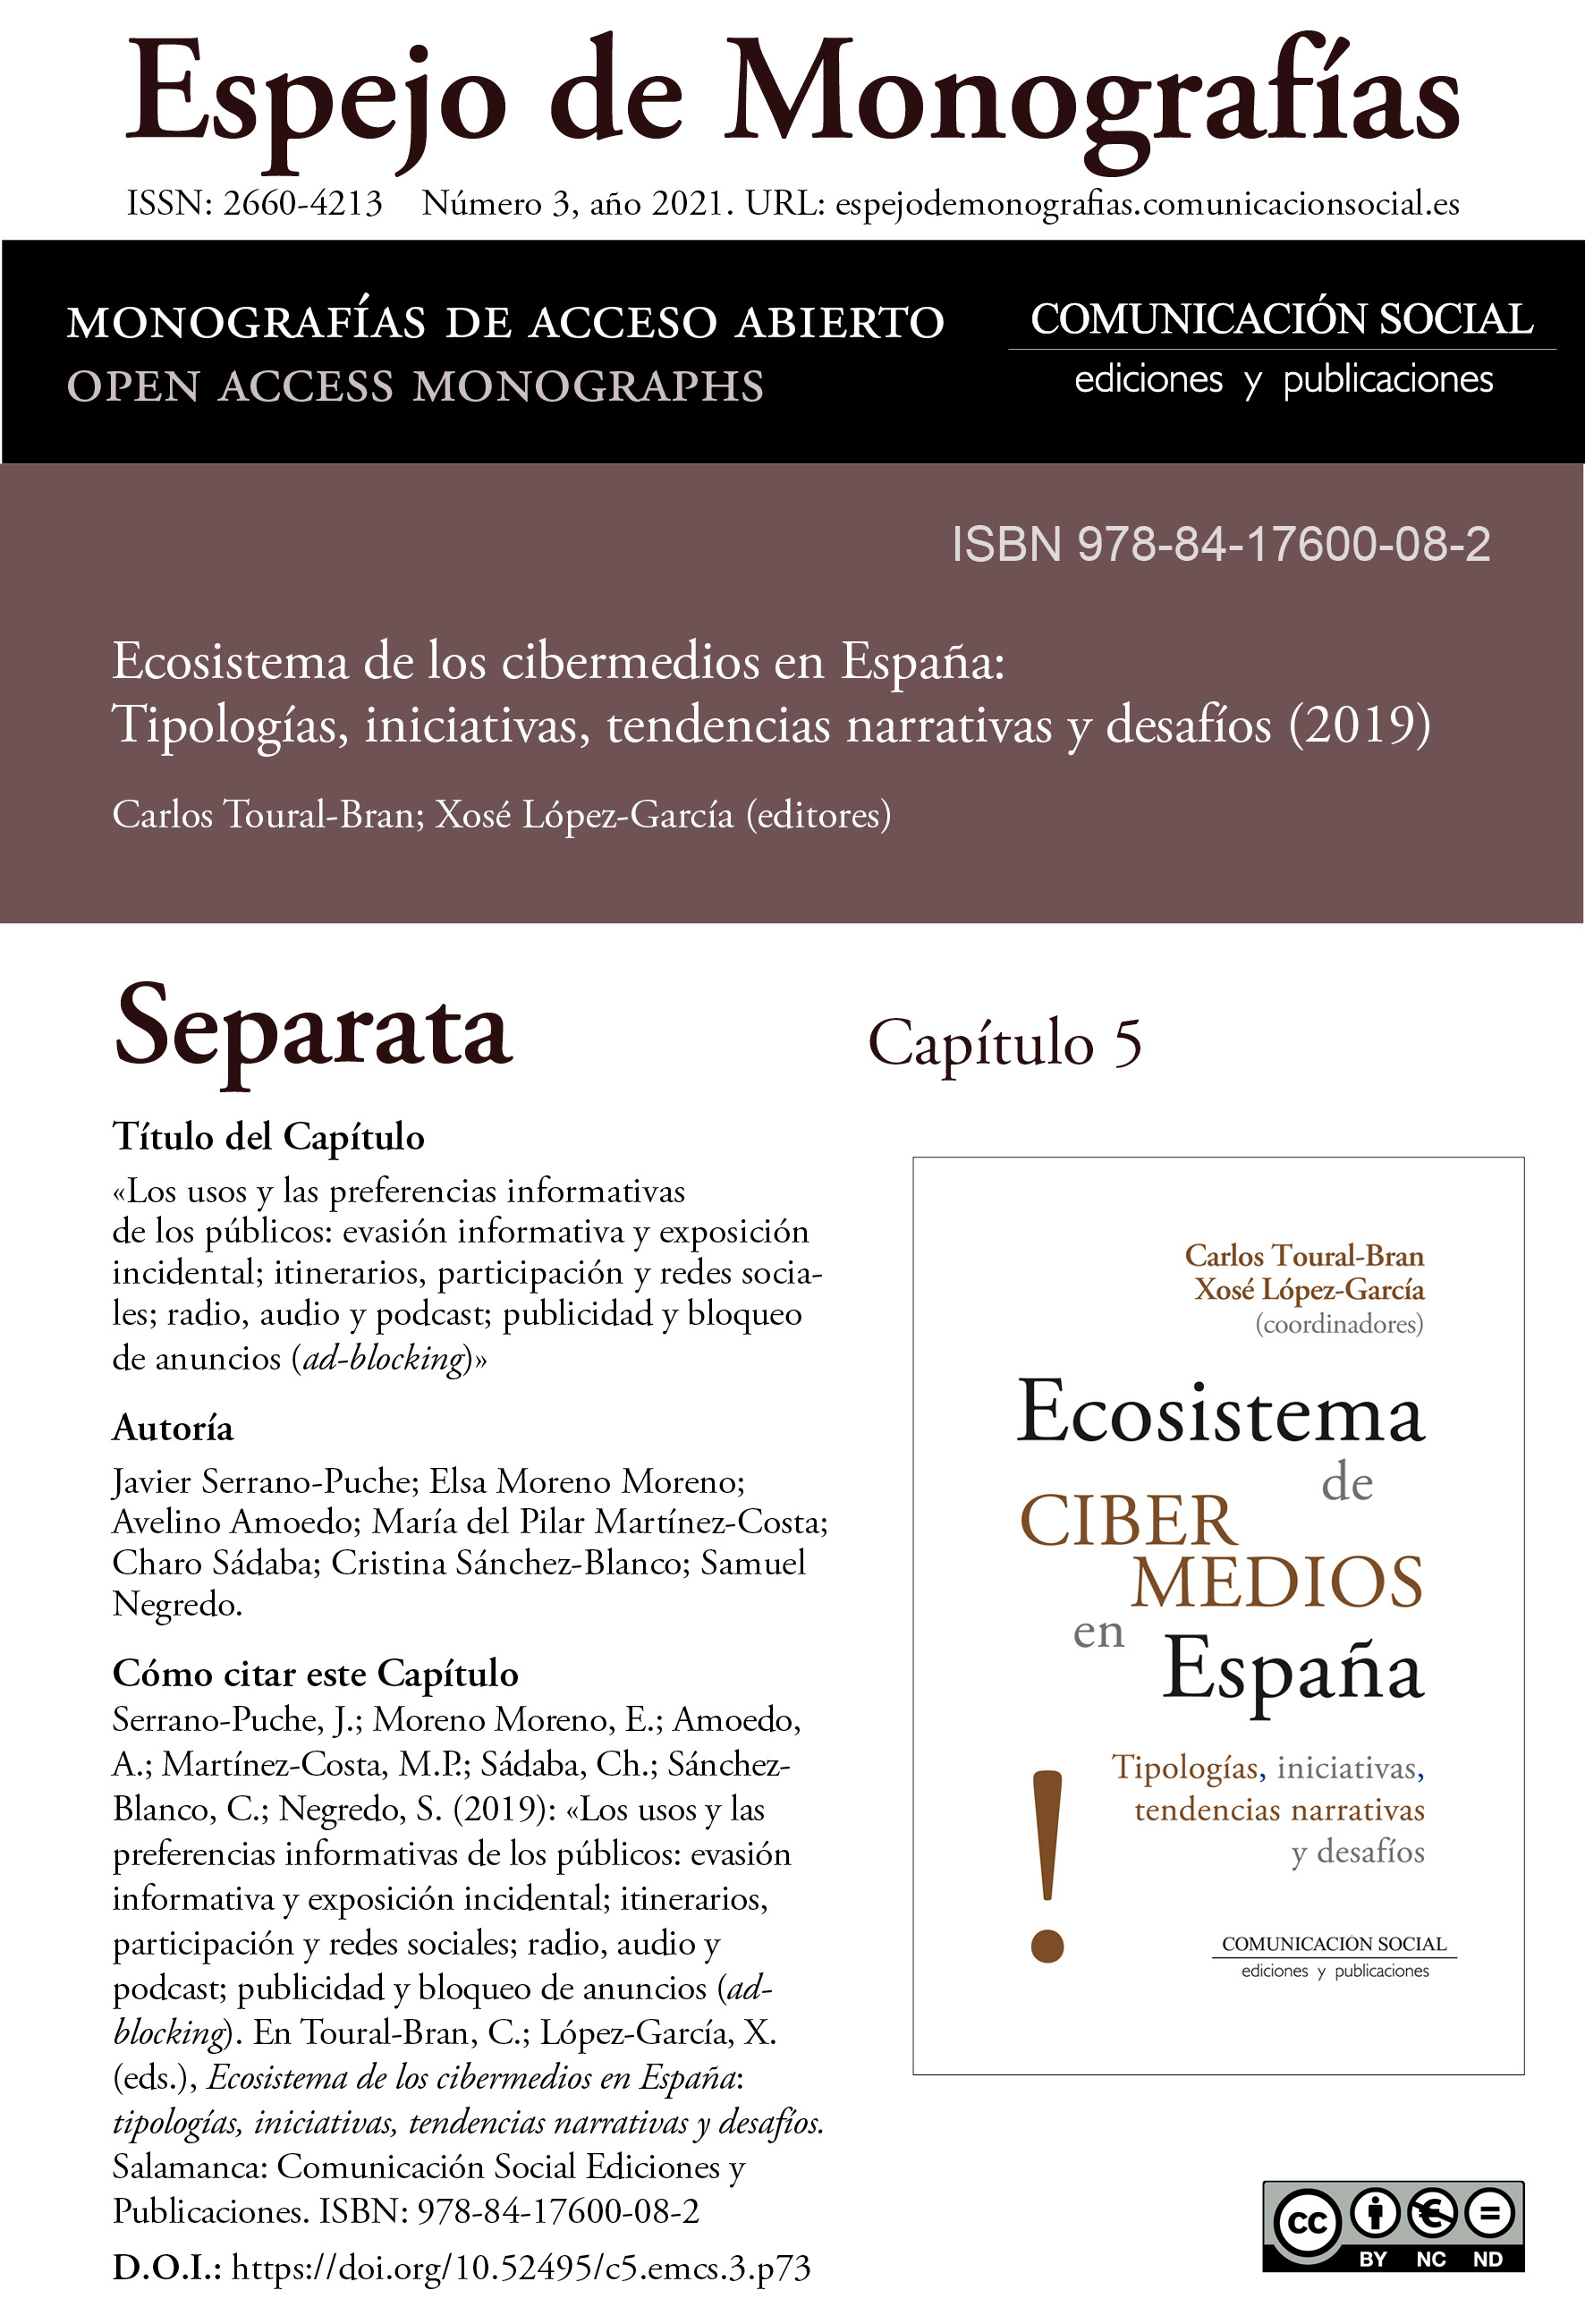 Separata del Capítulo 5 correspondiente a la monografía Ecosistema de cibermedios en España